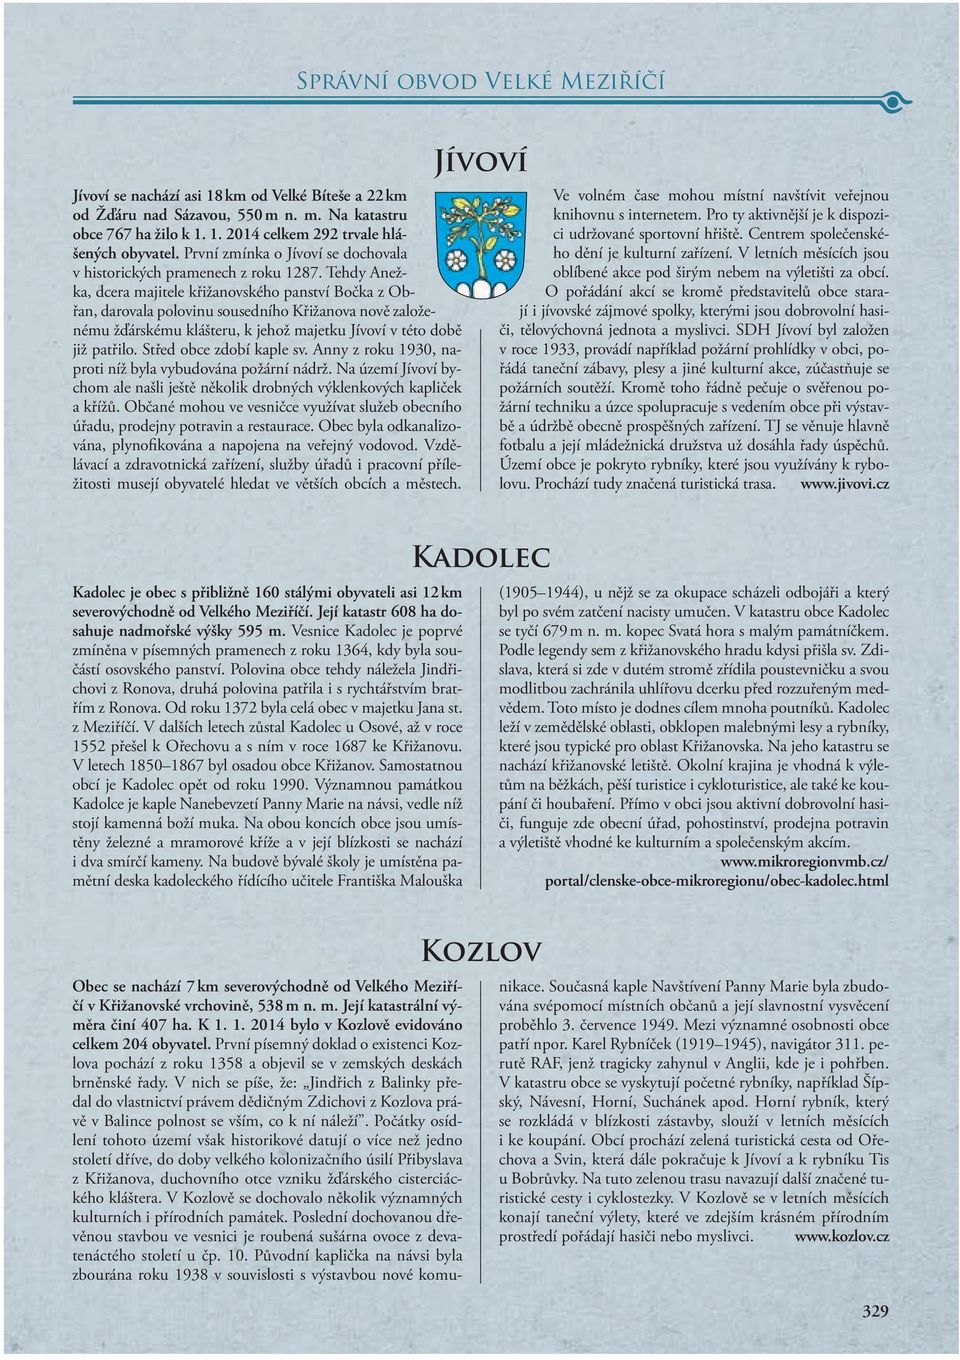 Tehdy Anežka, dcera majitele křižanovského panství Bočka z Obřan, darovala polovinu sousedního Křižanova nově založenému žďárskému klášteru, k jehož majetku Jívoví v této době již patřilo.